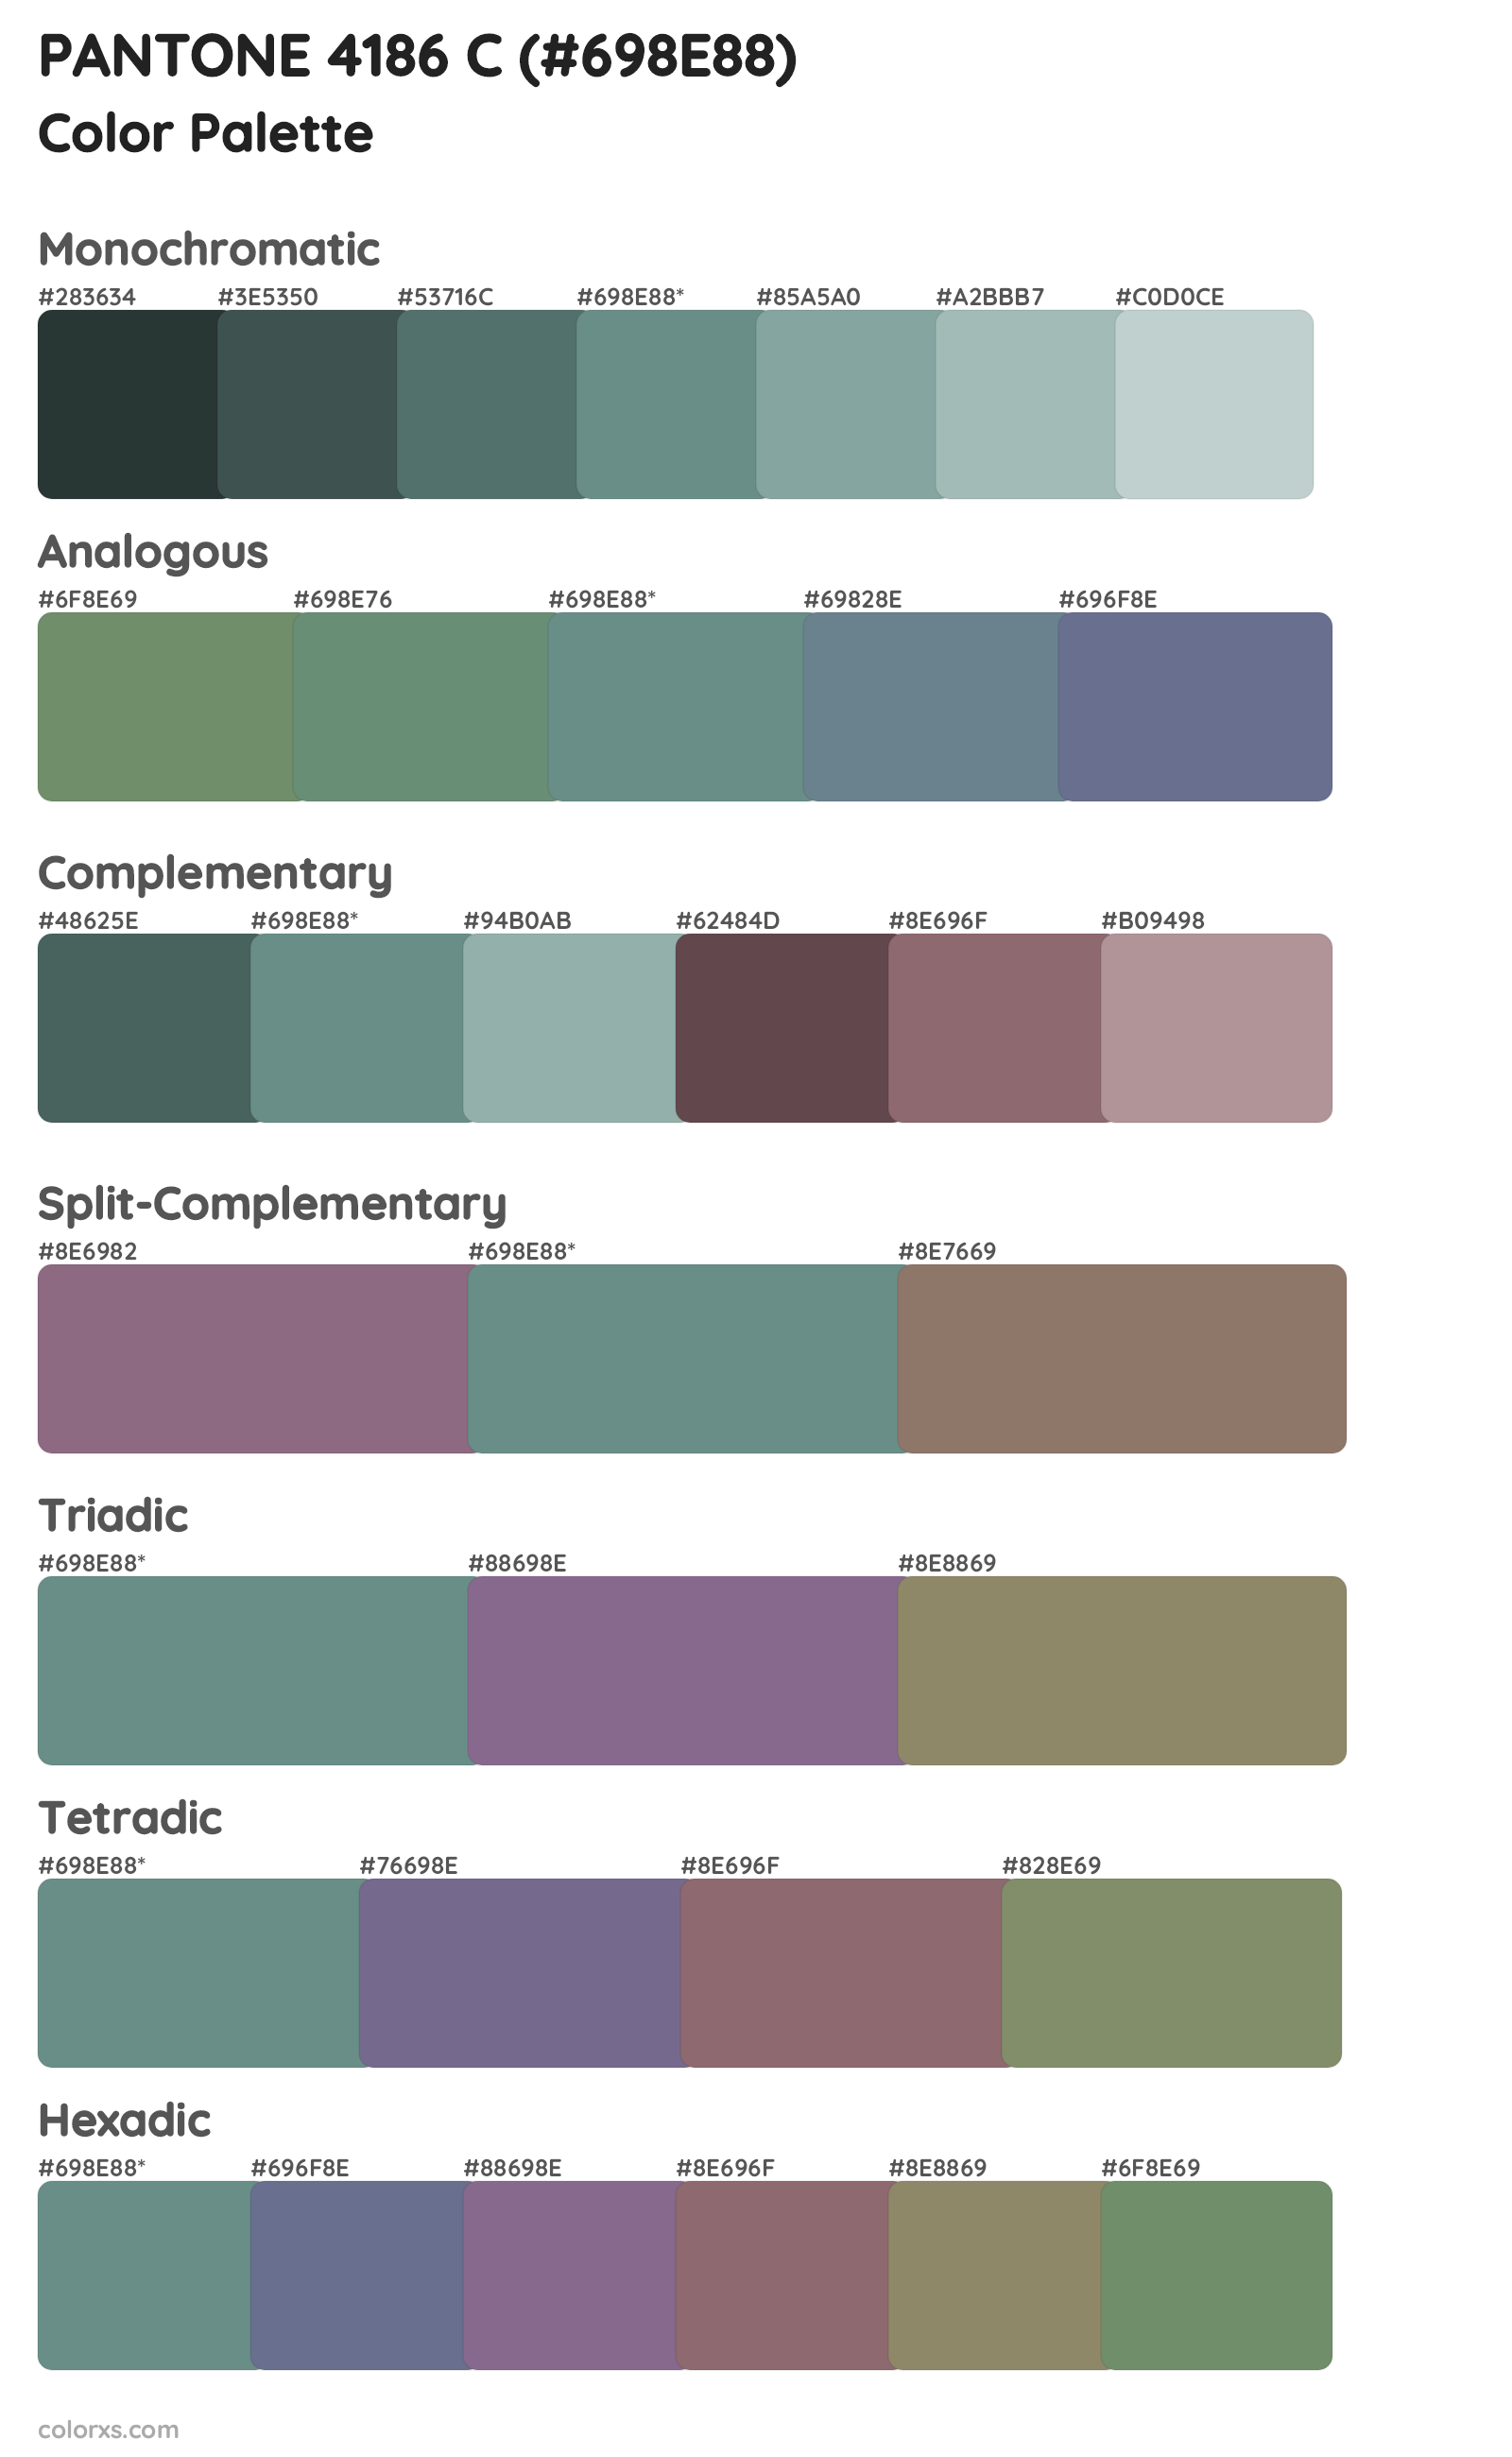 PANTONE 4186 C Color Scheme Palettes